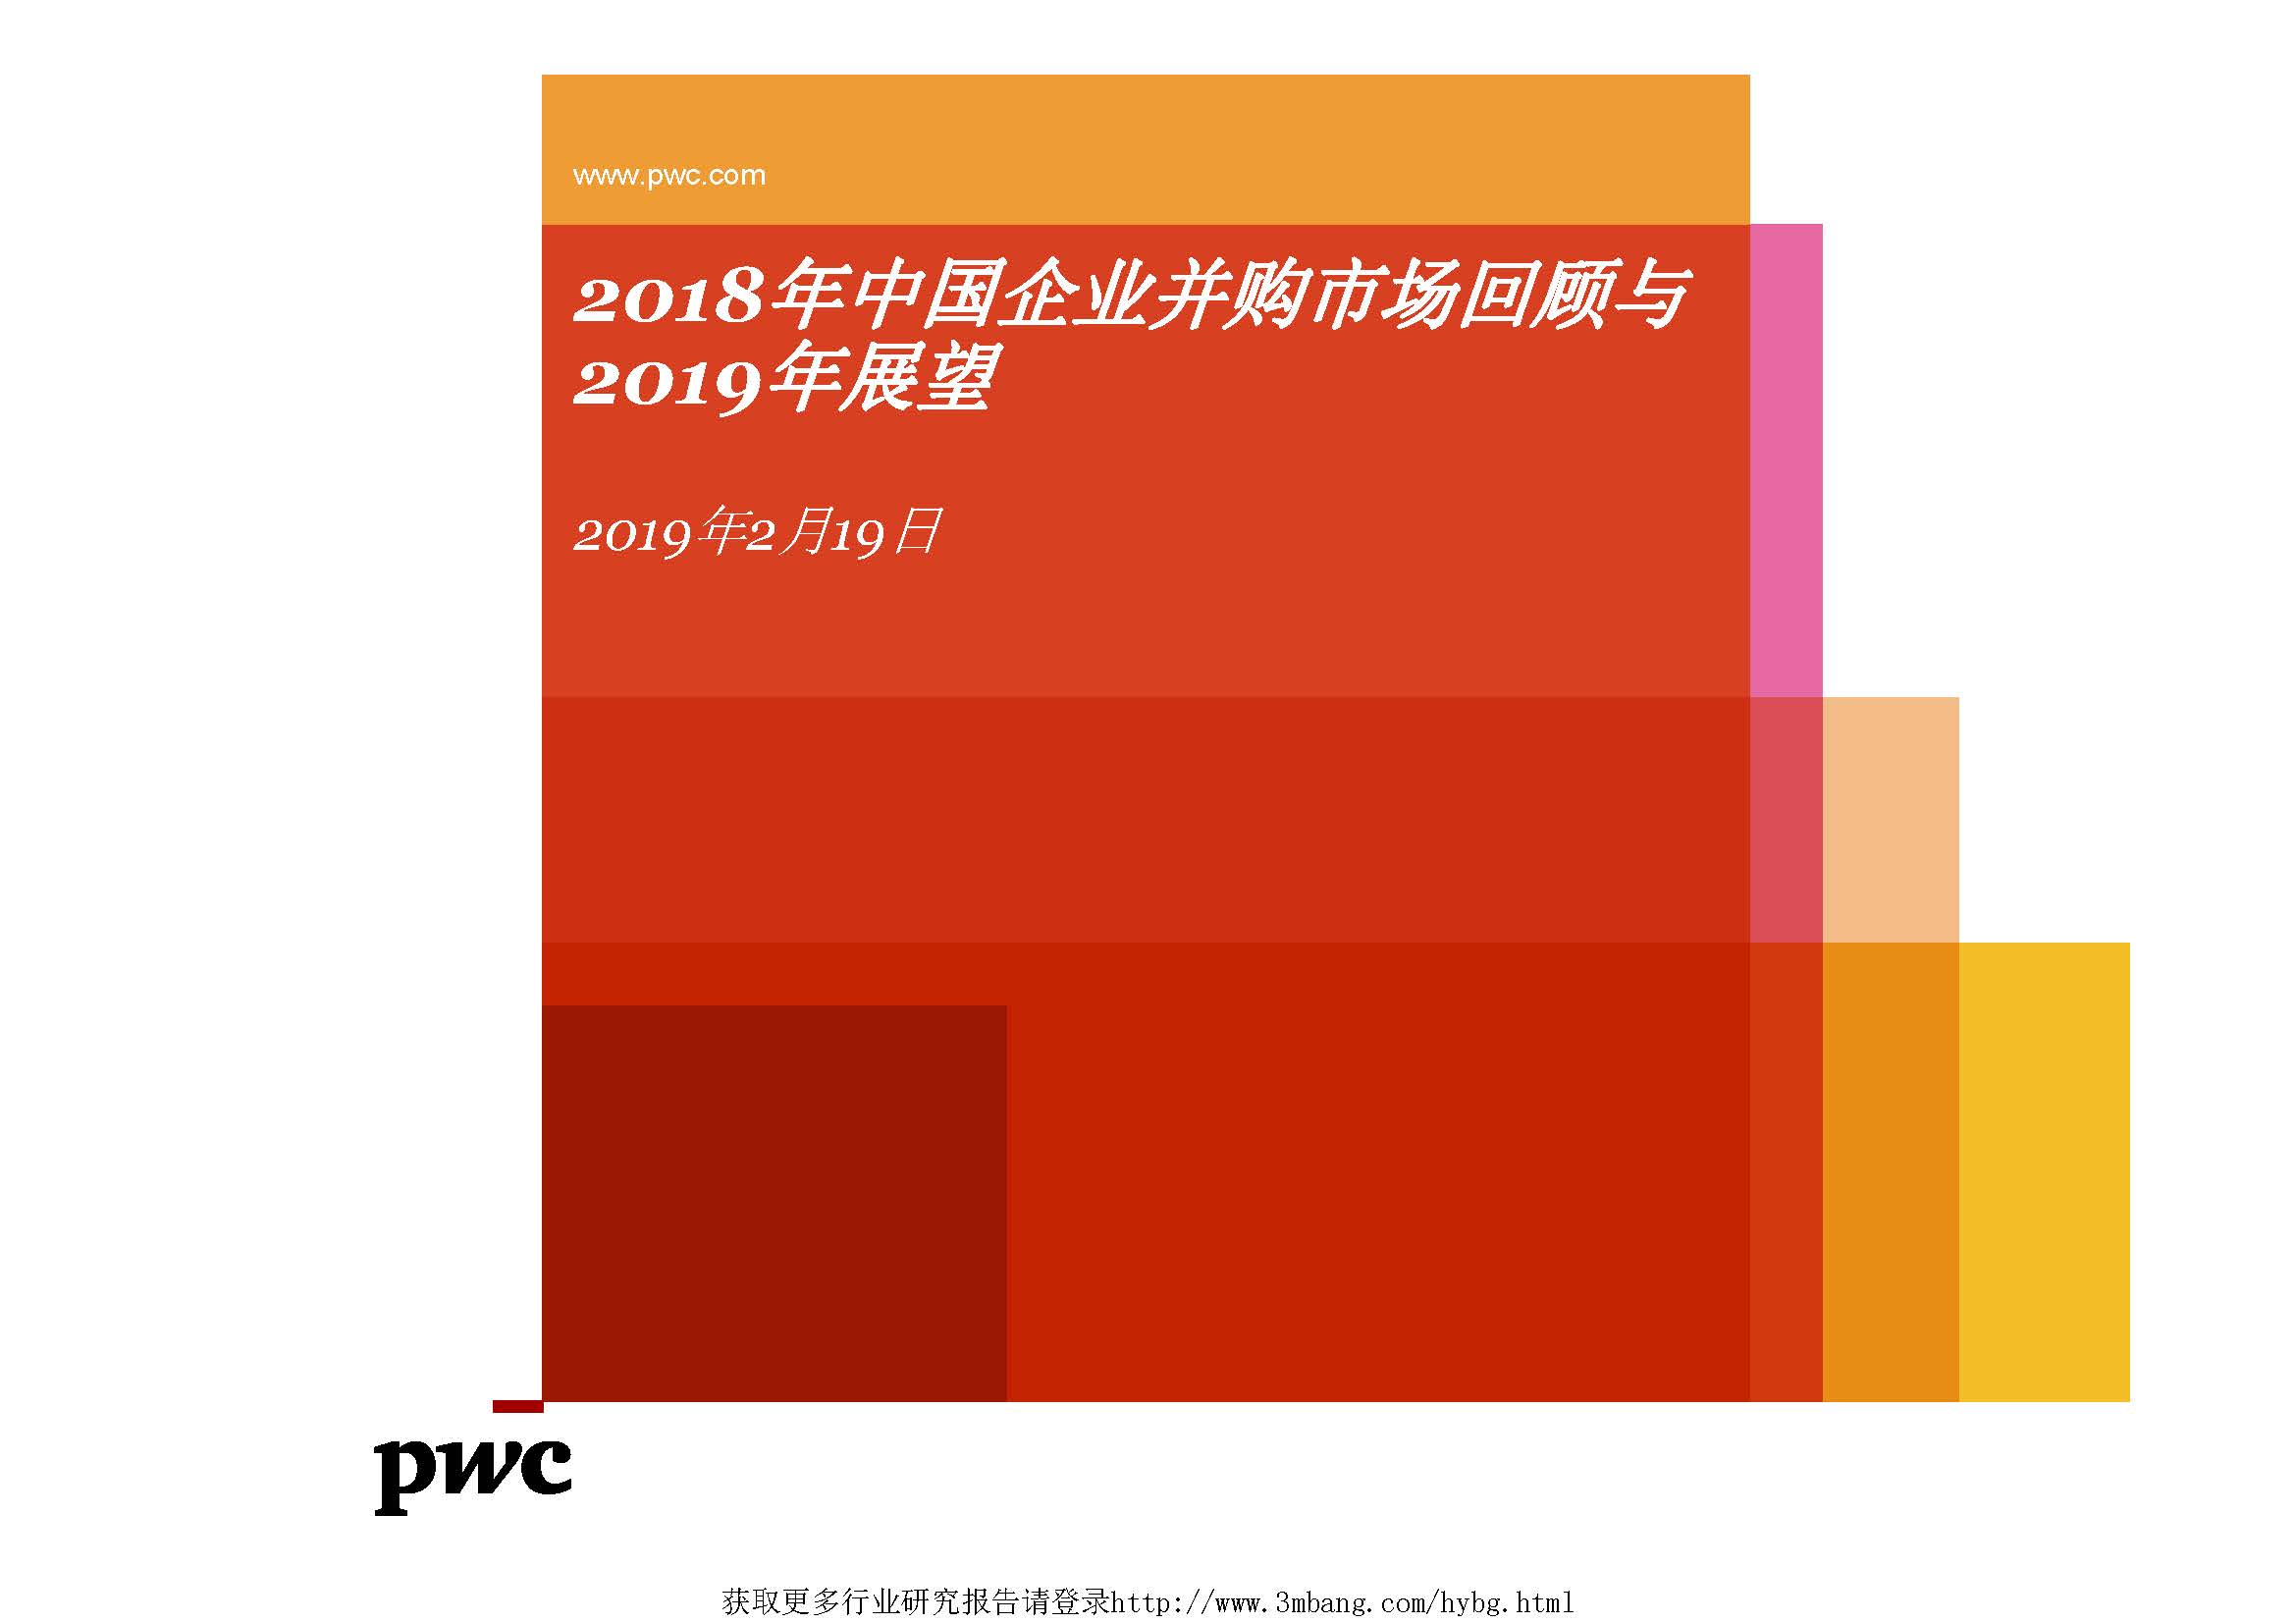 普华永道：2018年中国企业并购市场回顾与2019年展望（附下载地址）